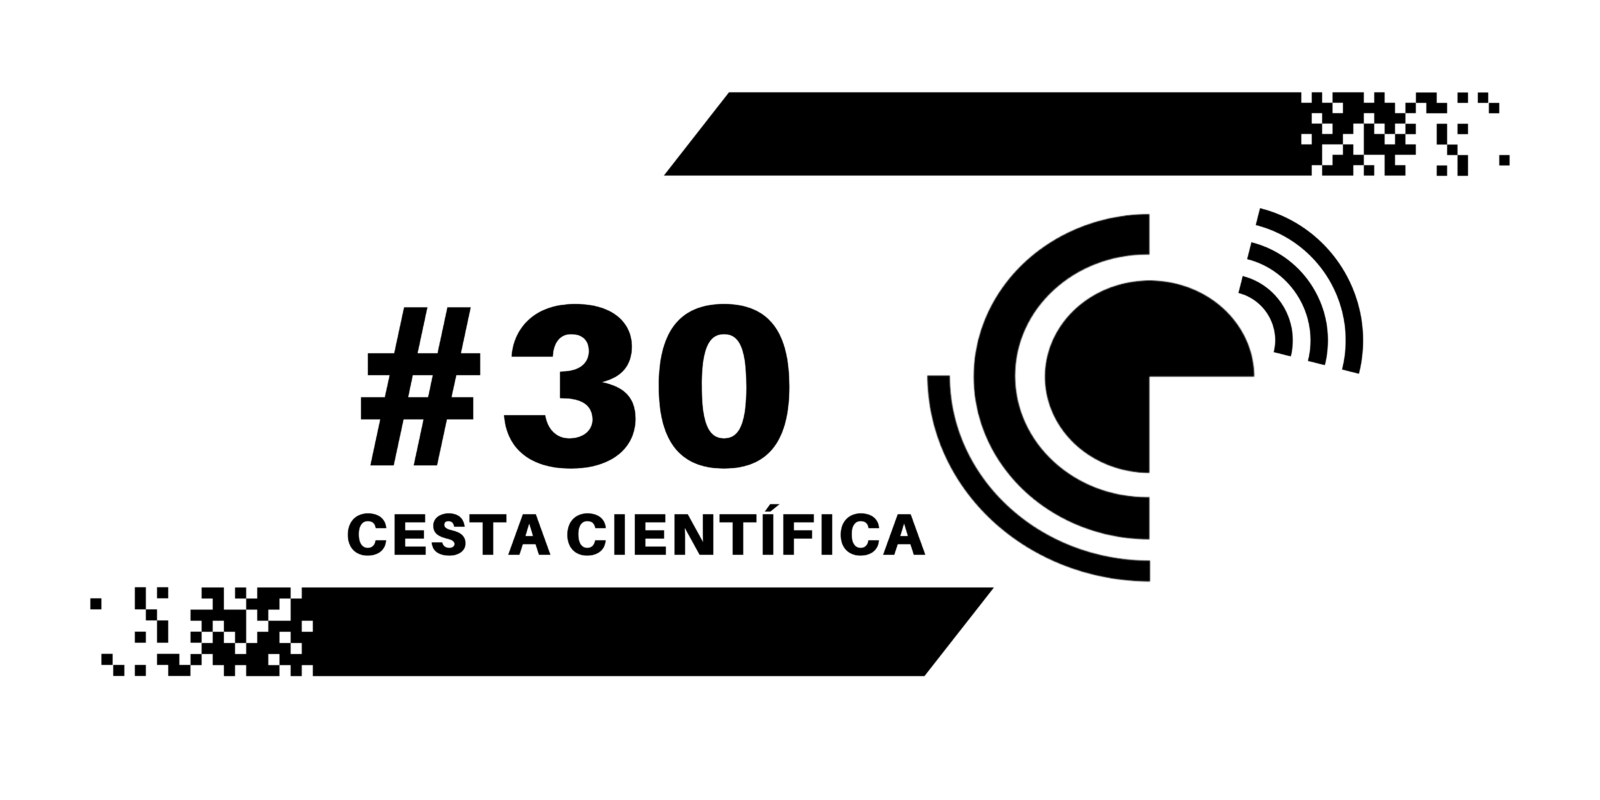 Cesta Científica #30: Voltamos, consulta pública de interesse dos pós-graduandos brasileiros, como participar de um congresso científico, satisfação docente e outros conteúdos